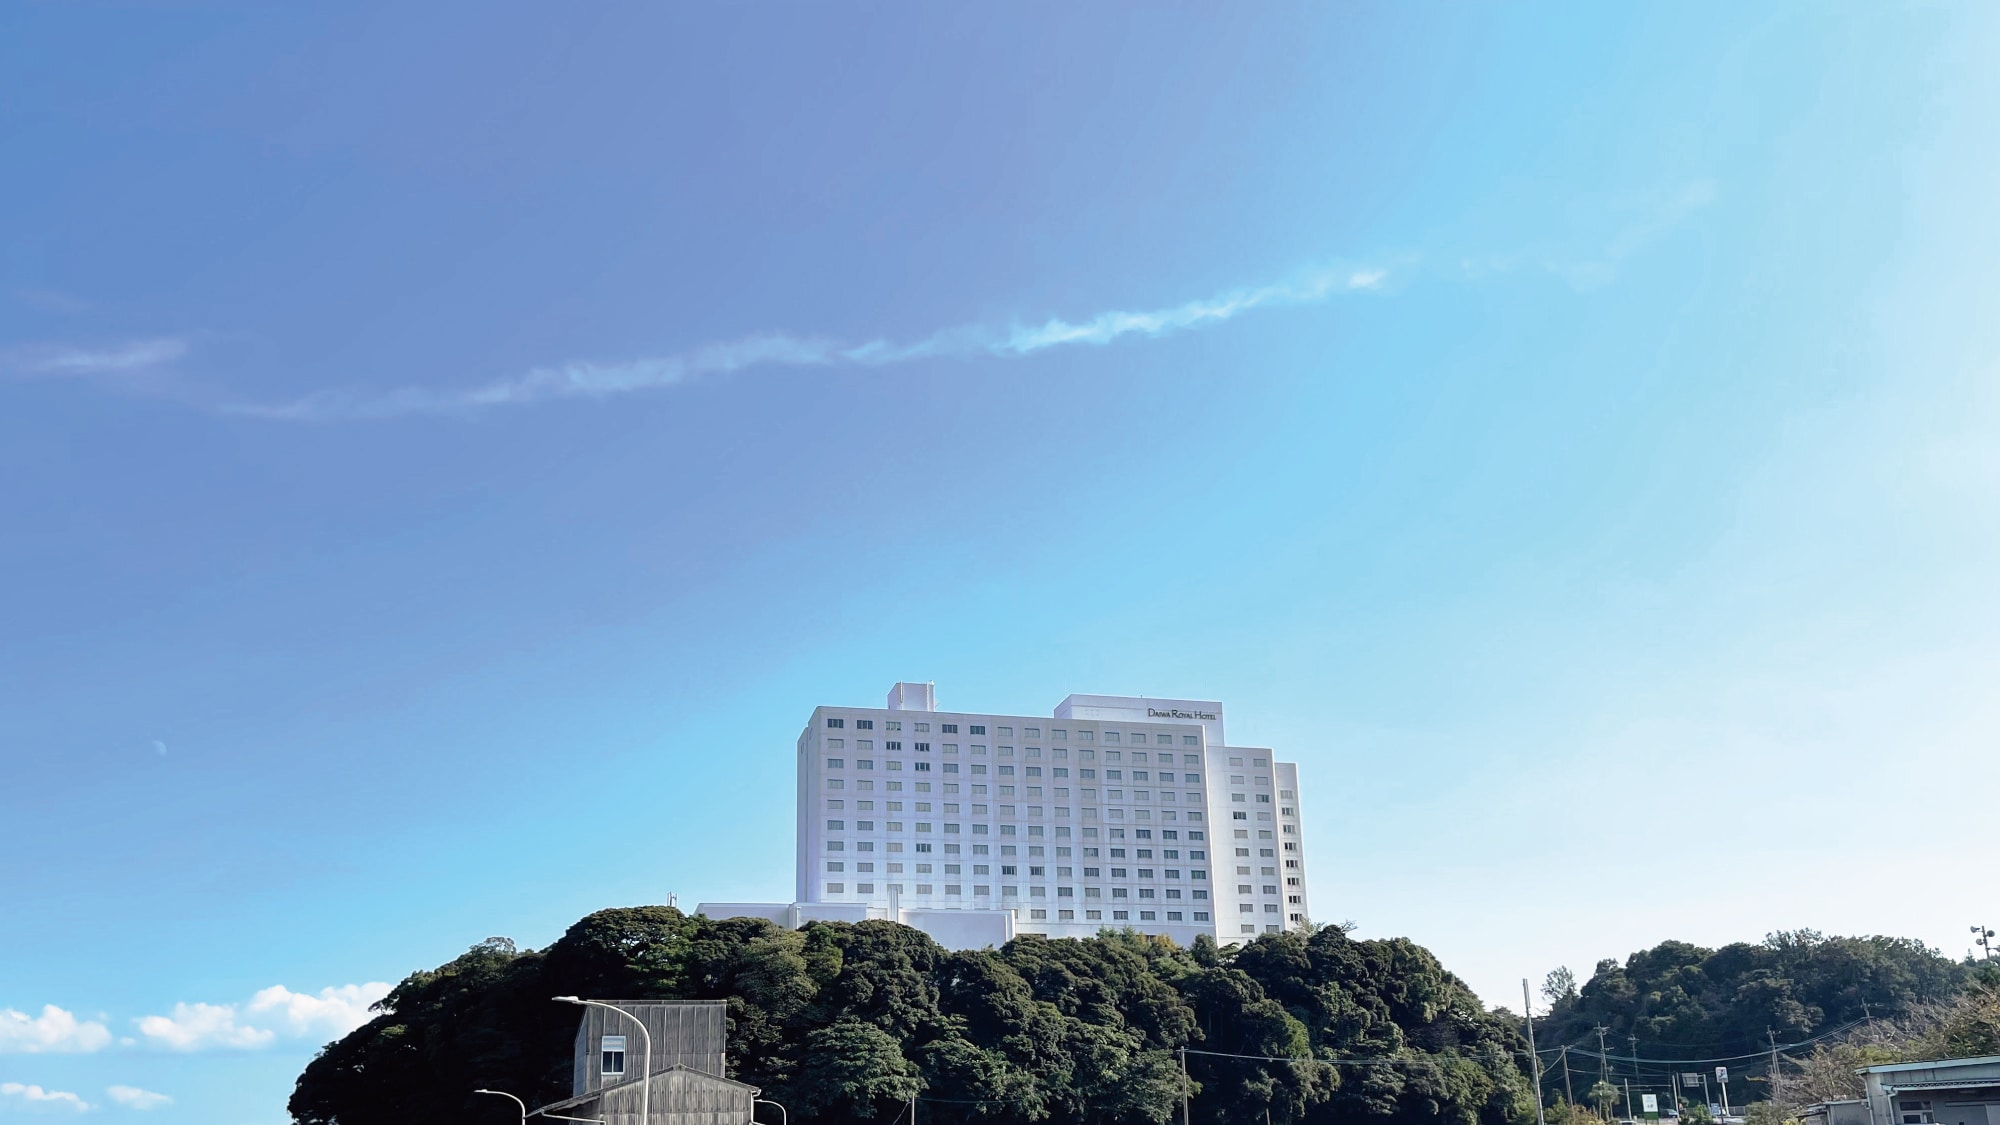 [Eksterior hotel] Hotel resor yang terletak di atas bukit di sepanjang Rute Nasional 10 (dari arah Hijicho)